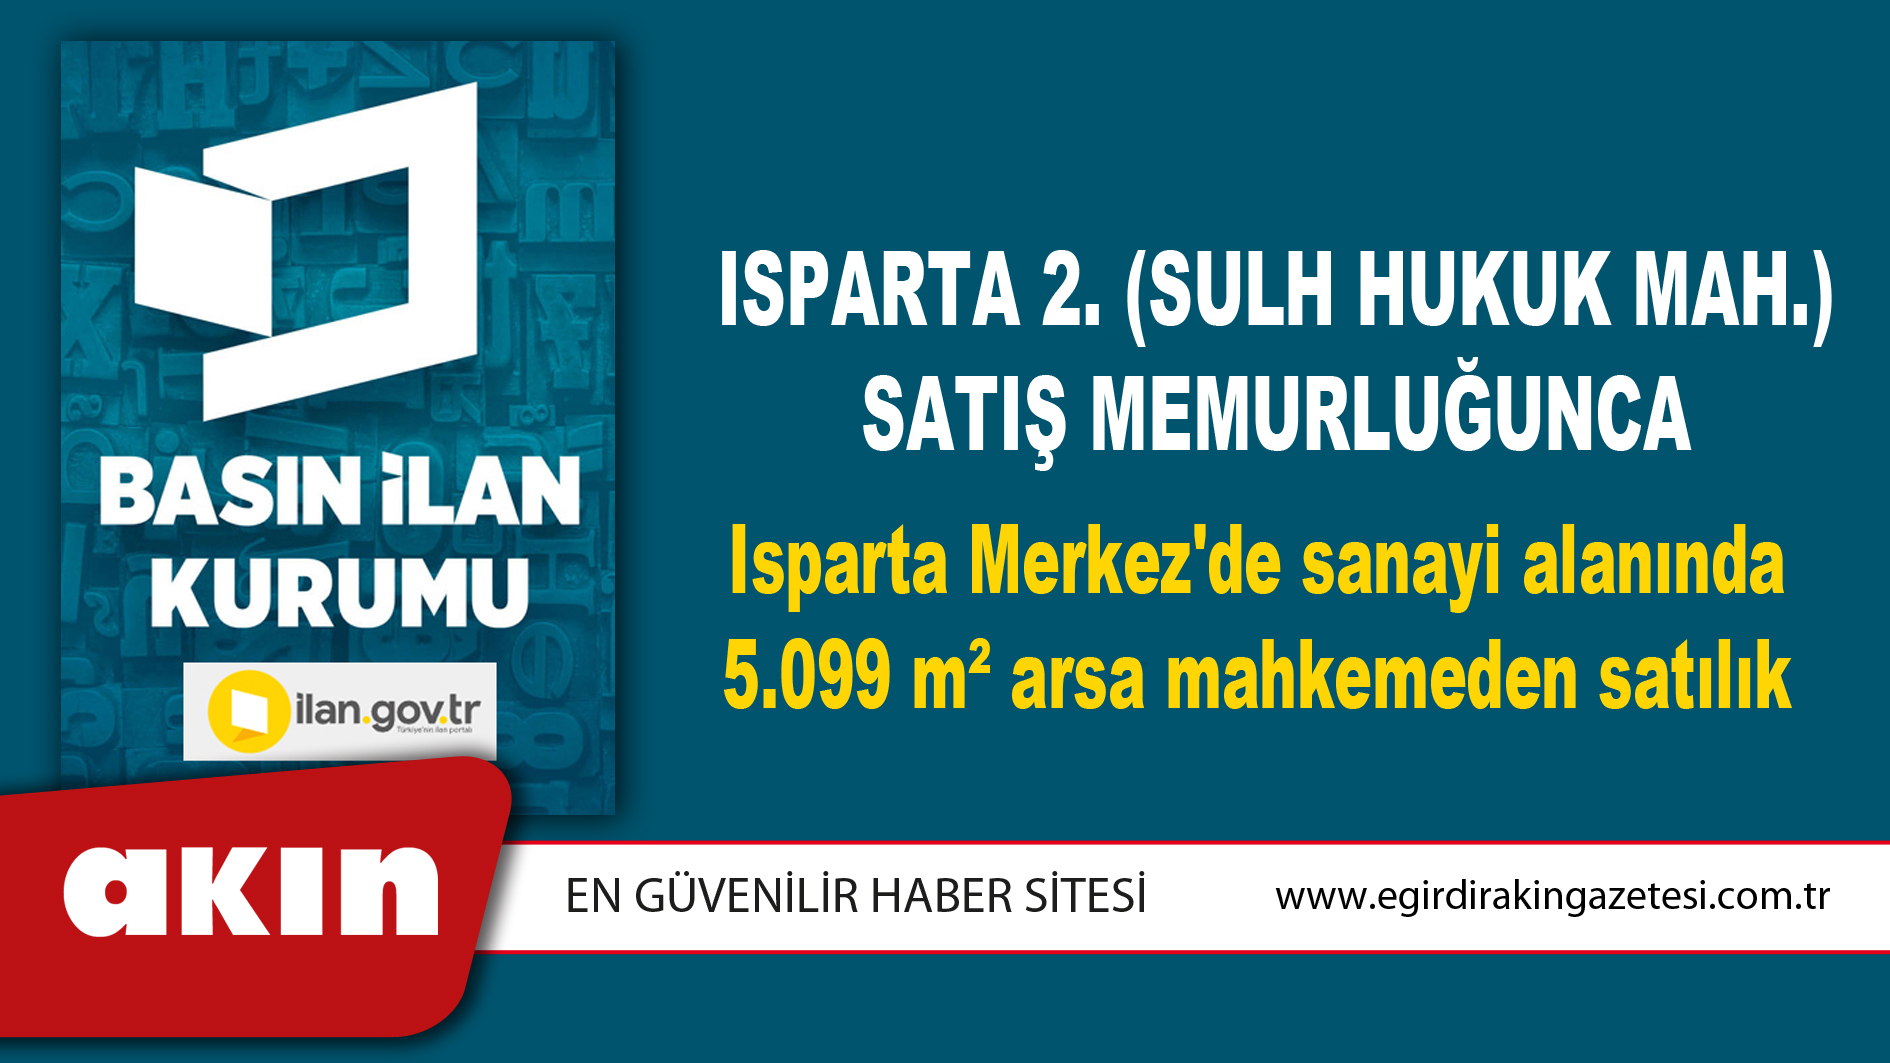 Isparta 2. (Sulh Hukuk Mah.) Satış Memurluğunca Isparta Merkez'de sanayi alanında 5.099 m² arsa mahkemeden satılık